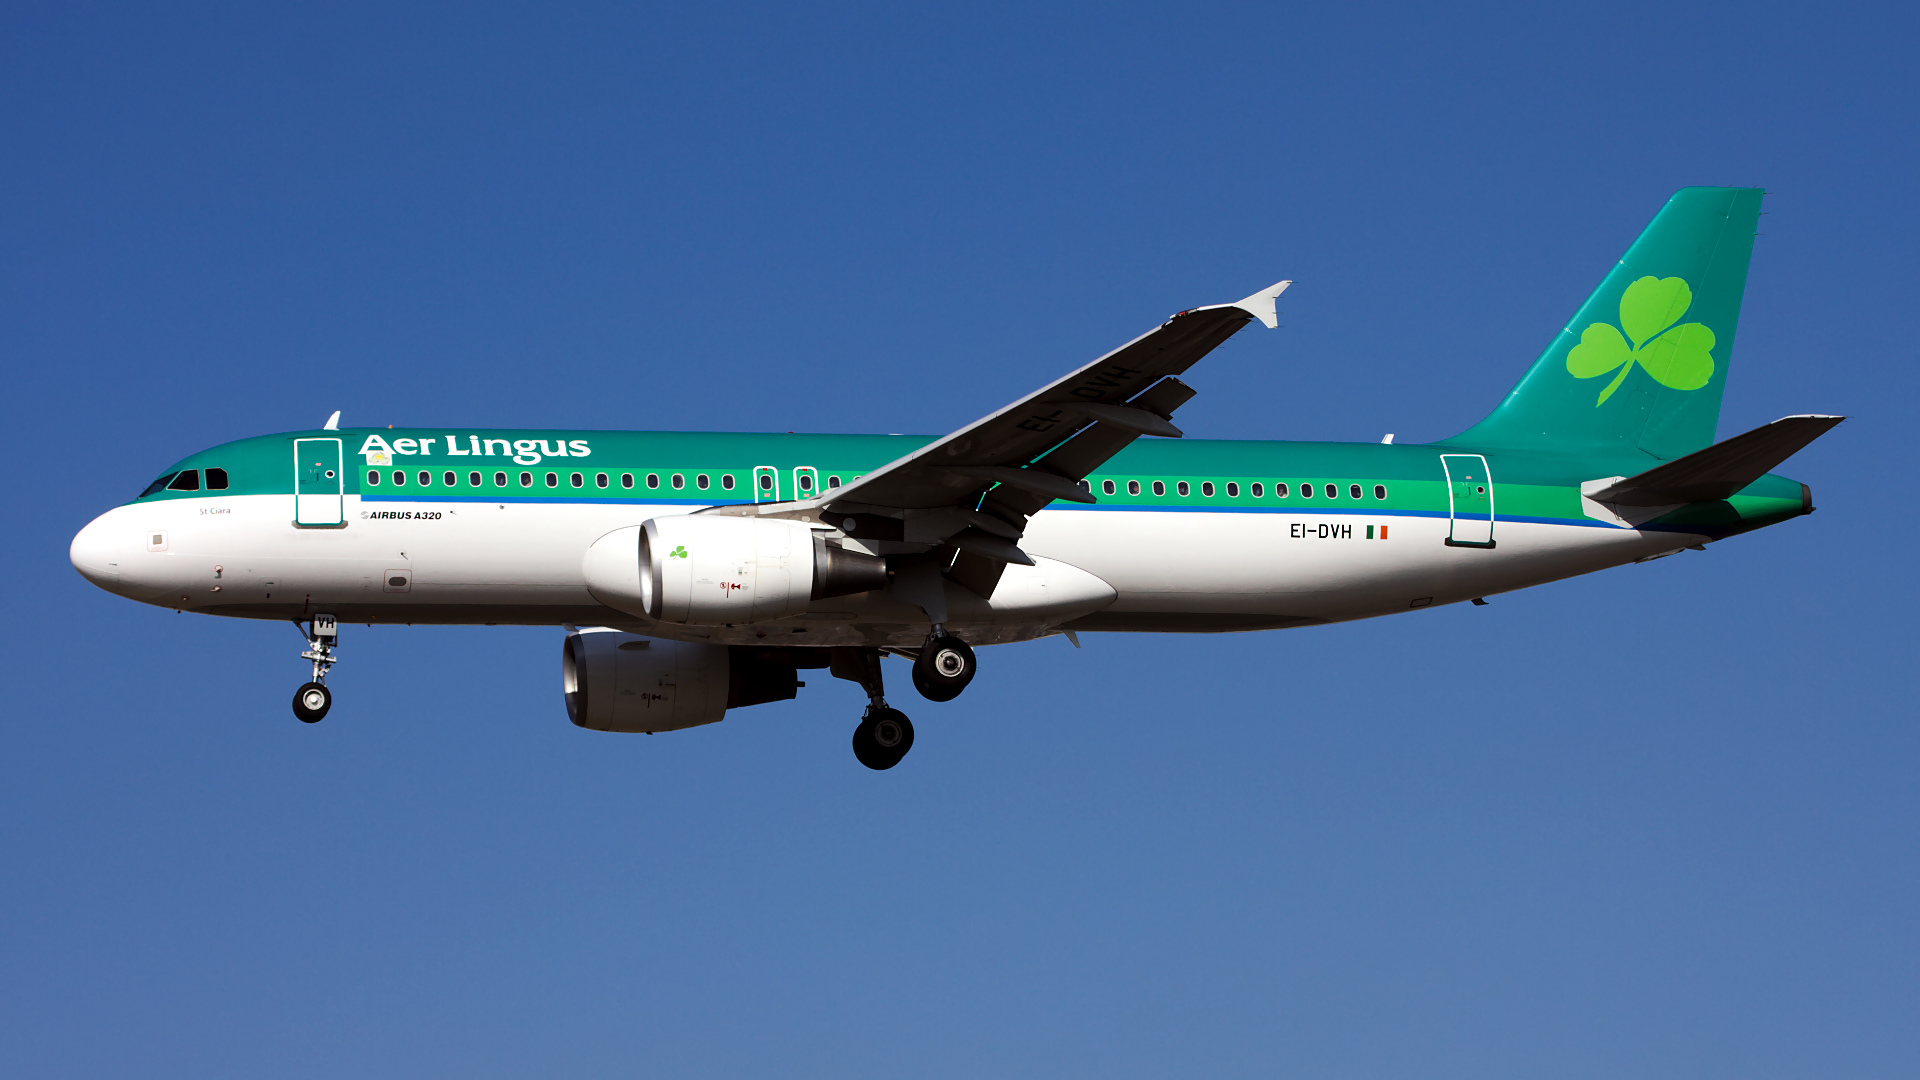 EI-DVH ✈ Aer Lingus Airbus A320-214 @ London-Heathrow